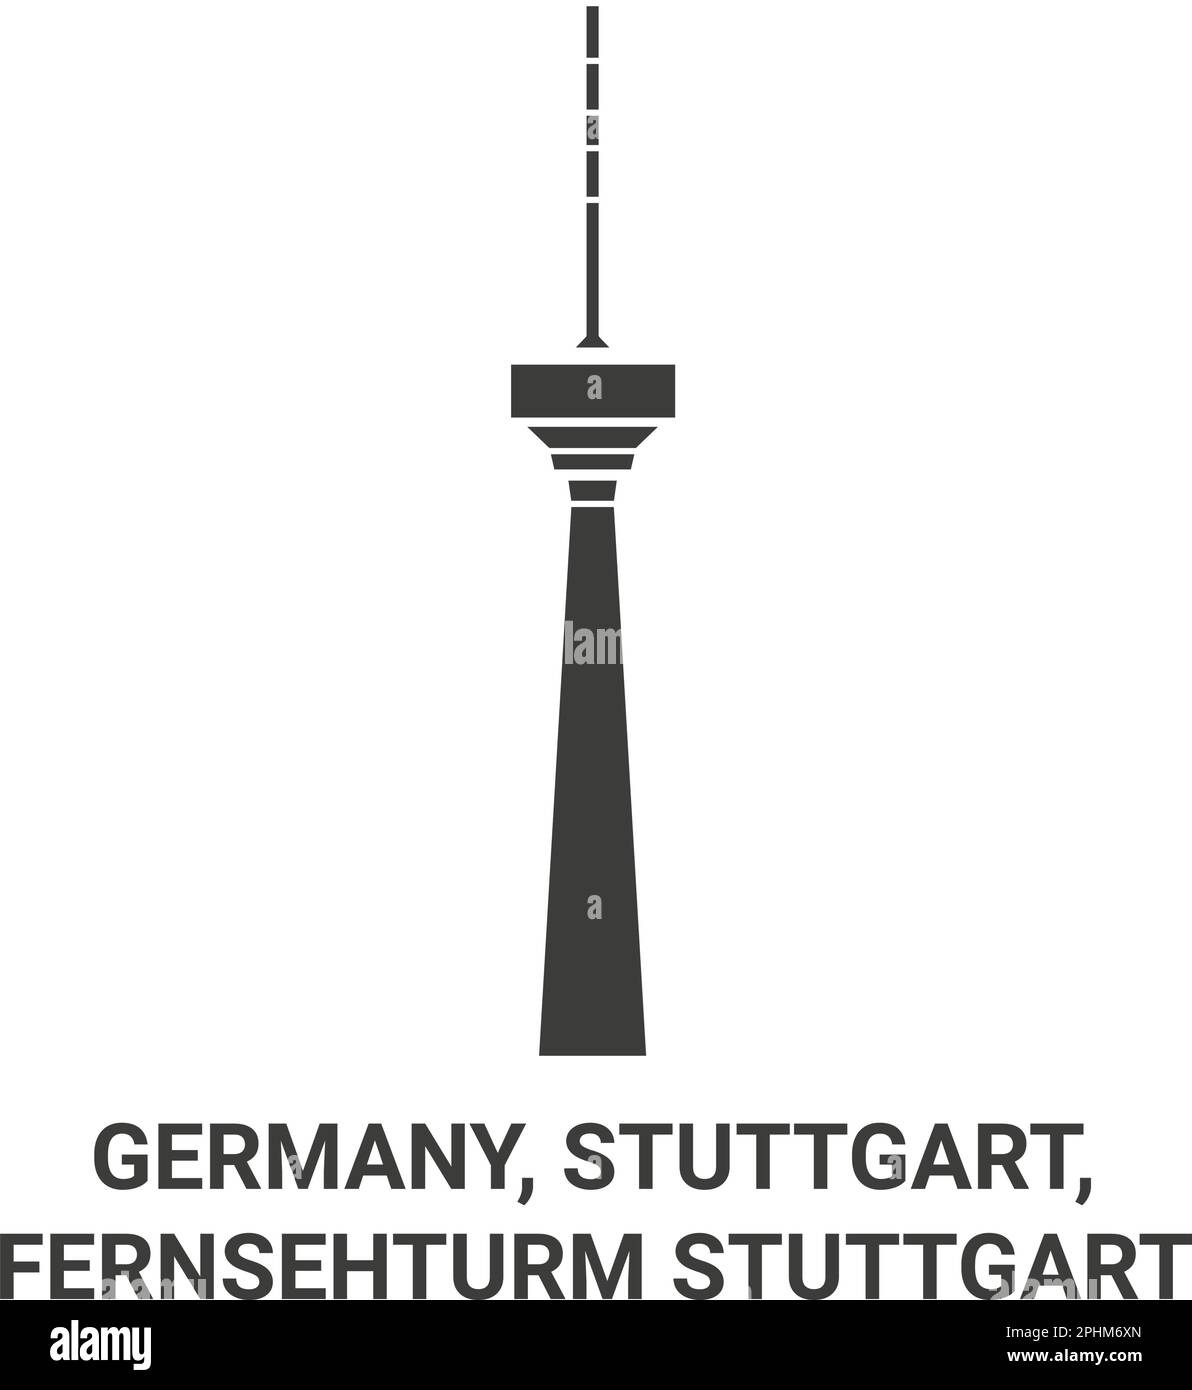 Germany, Stuttgart, Fernsehturm Stuttgart travel landmark vector illustration Stock Vector